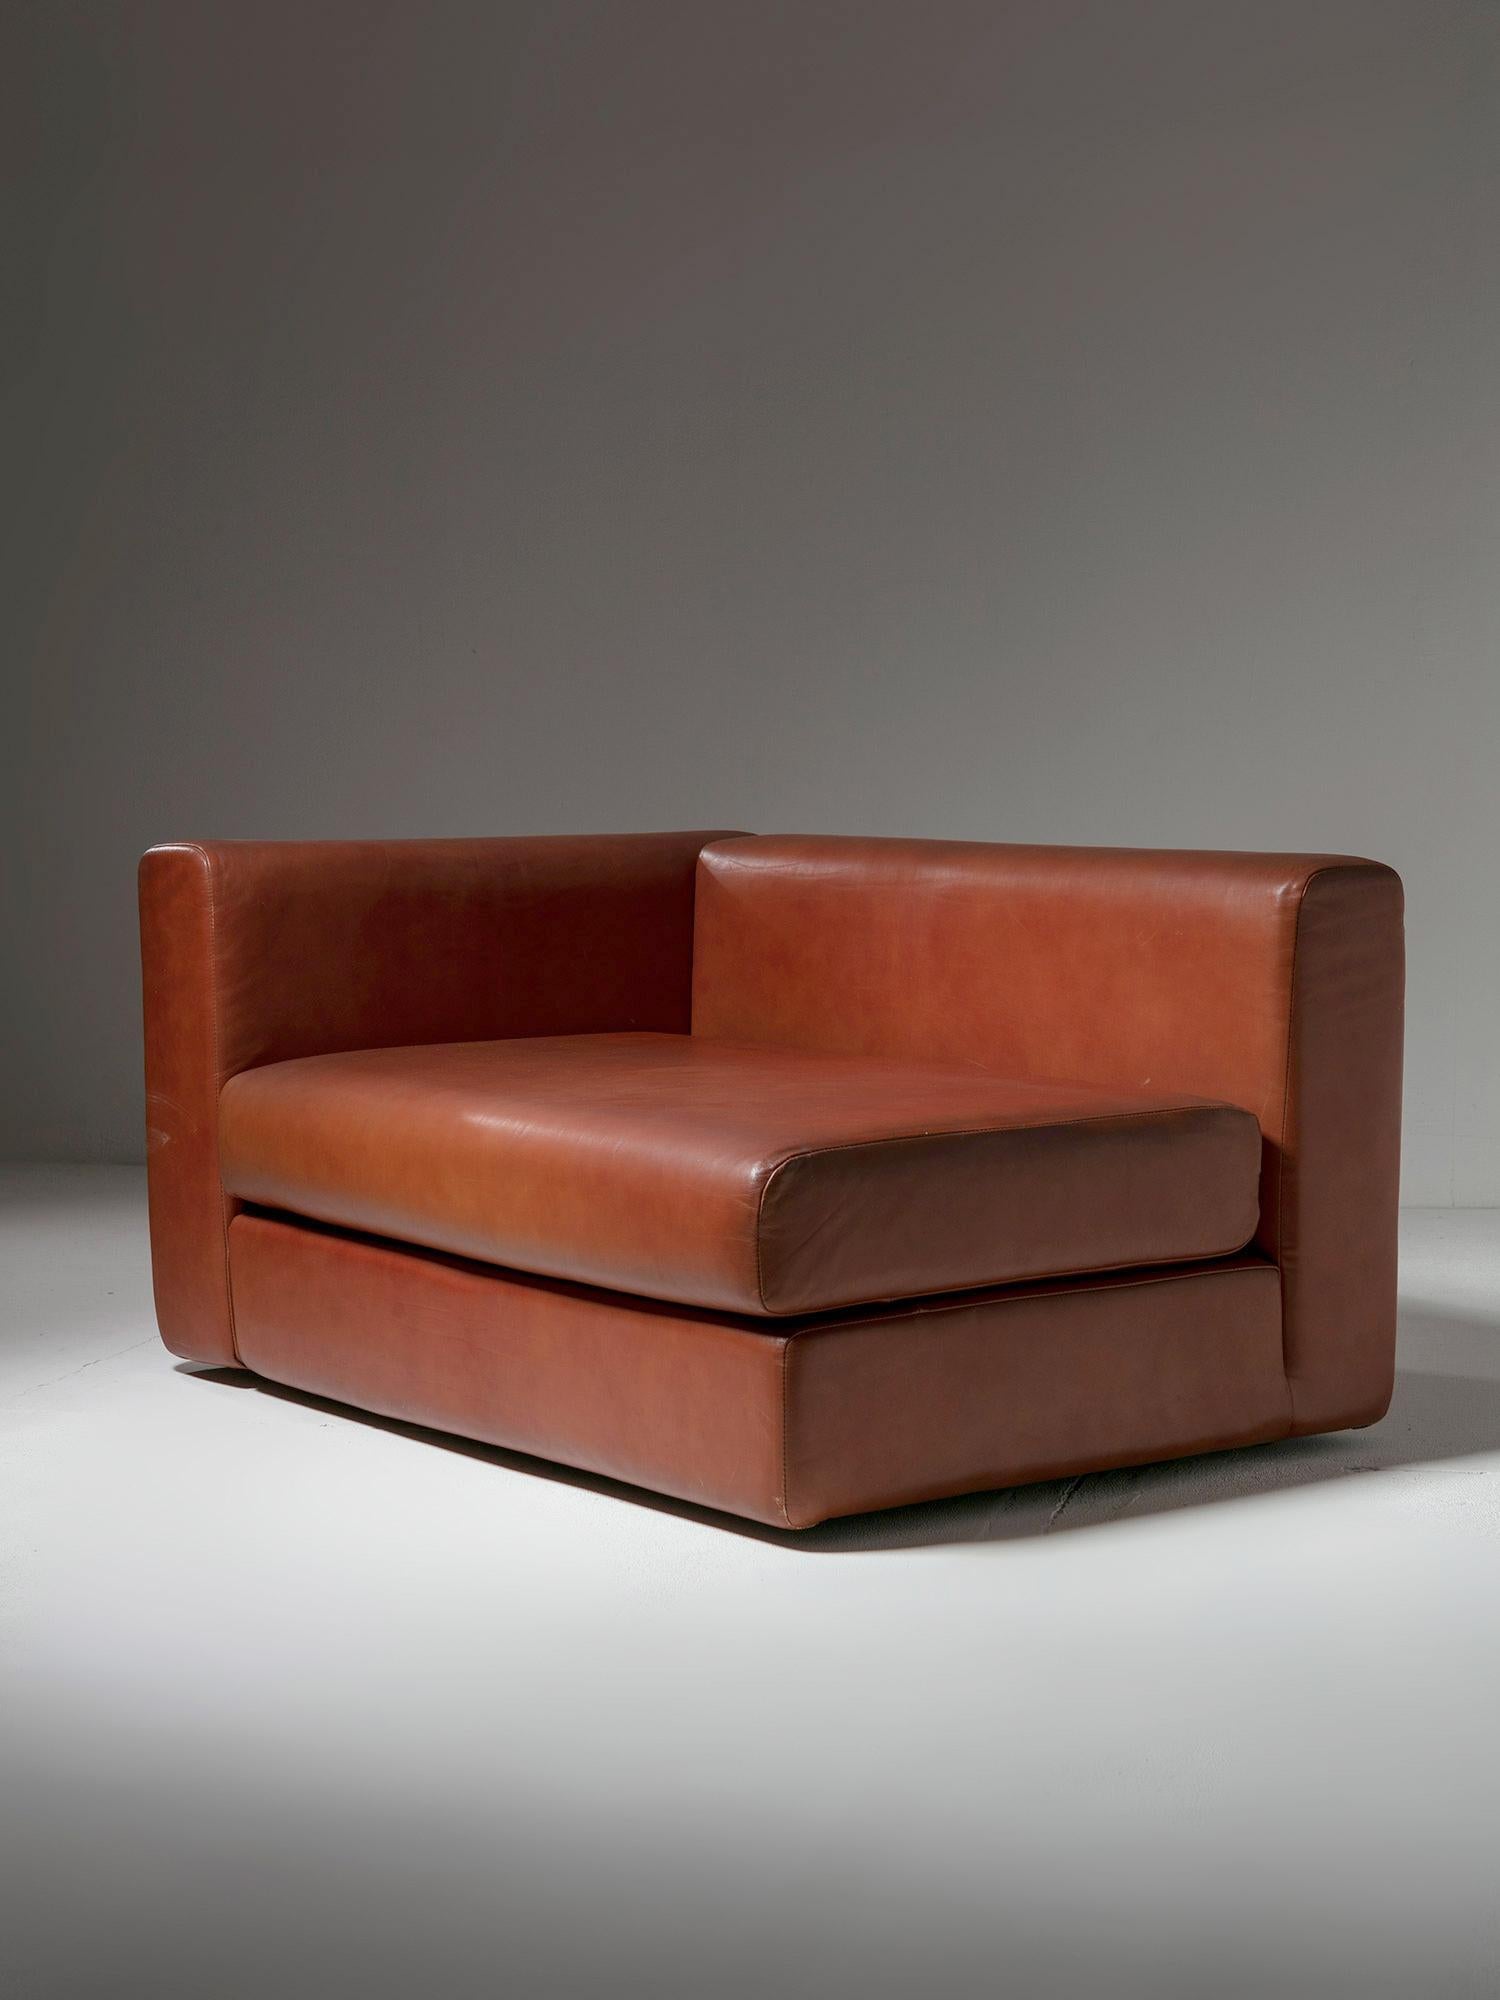 Seltener Bacone-Sessel von Cini Boeri für Arflex.
Extra großes Stück mit großzügigen quadratischen Proportionen.